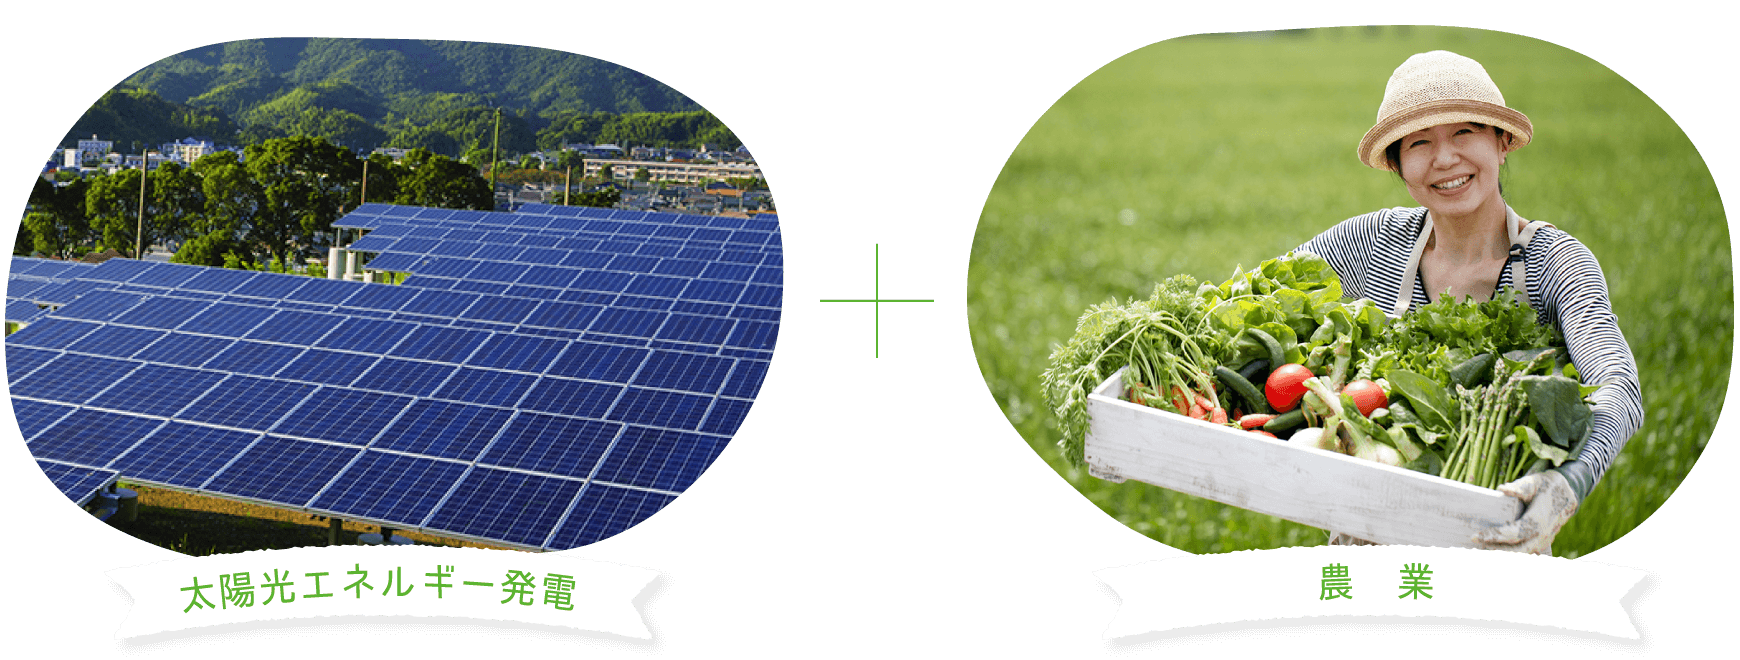 ミライ型農業プロジェクトの目的 ソーラーシェアリング事業を通して、持続可能なエネルギー社会へ貢献する